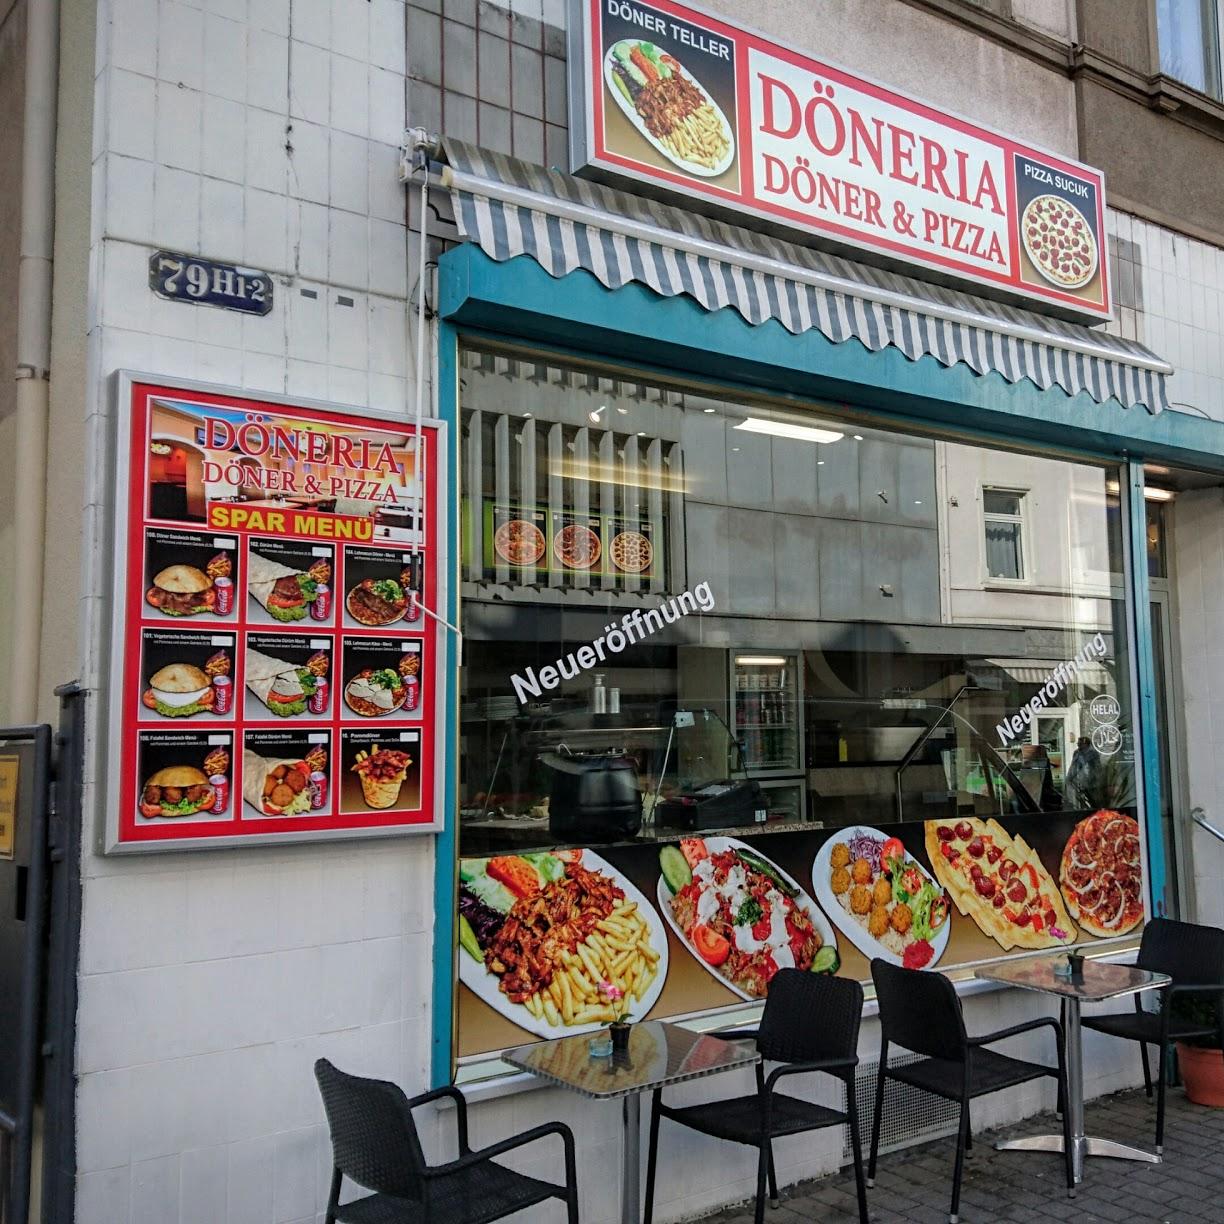 Restaurant "Döneria Döner & Pizza" in Frankfurt am Main